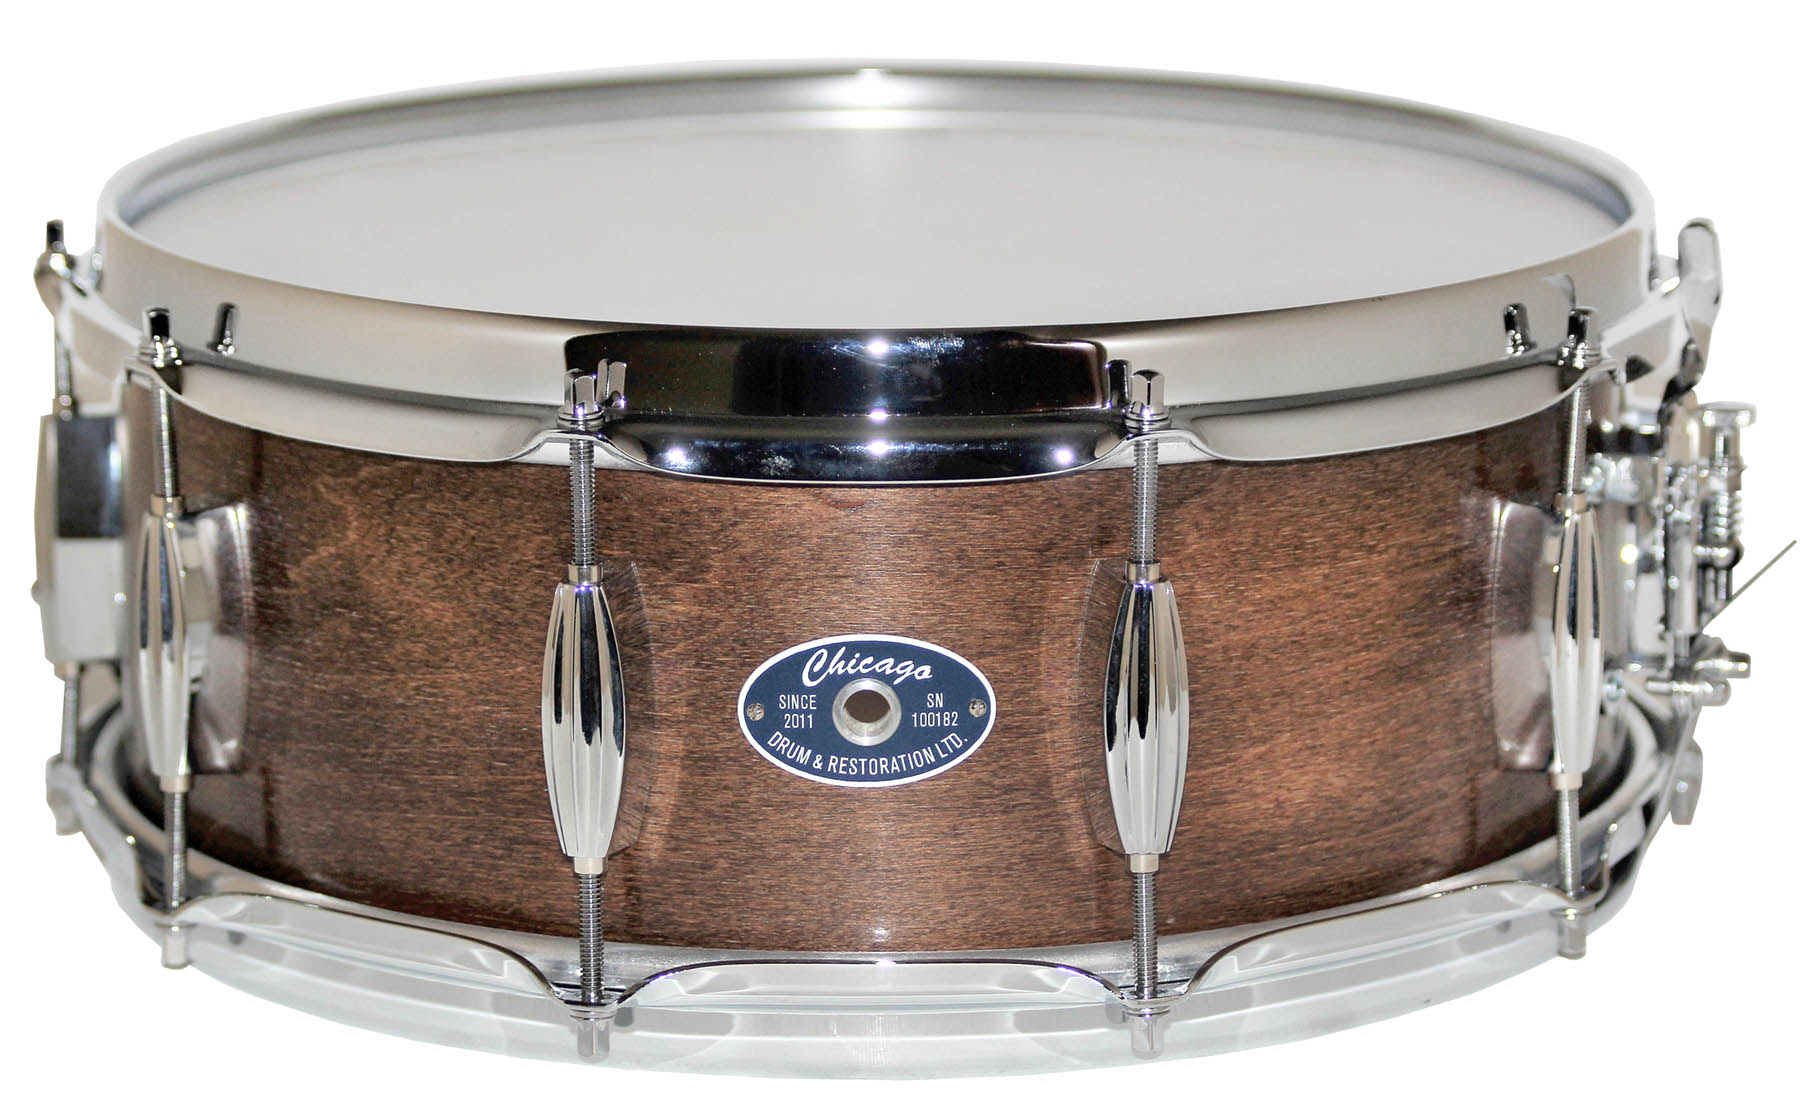 Snare Drum - 5-1/2" Walnut Stain on Maple/Poplar - Chicago Drum